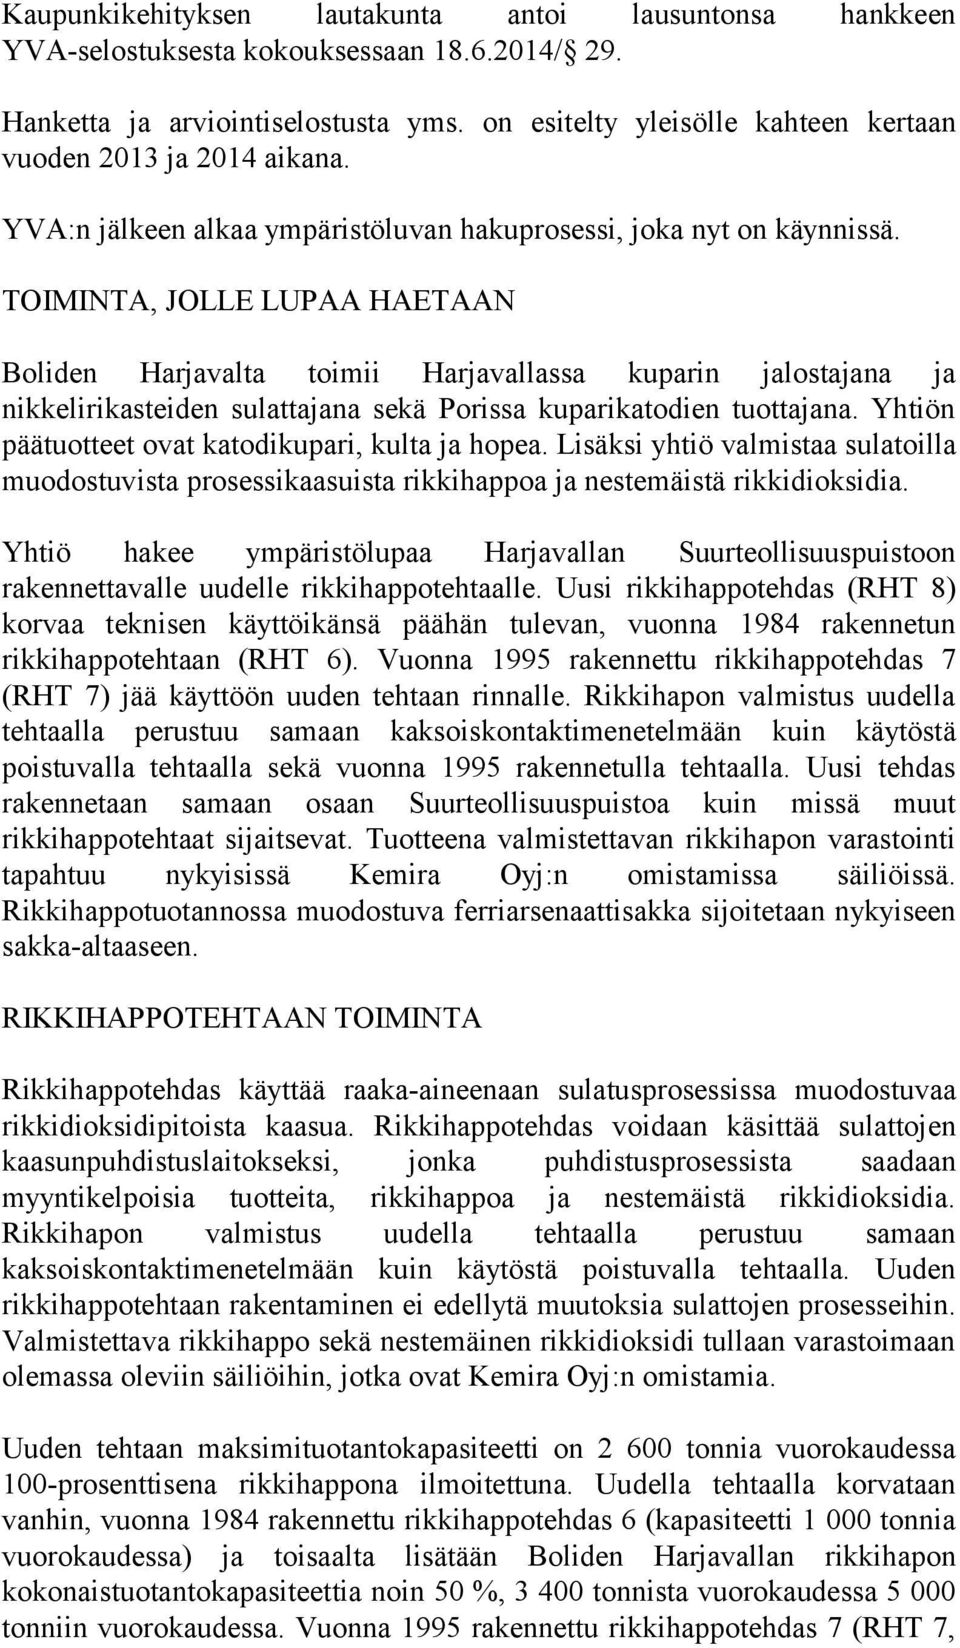 TOIMINTA, JOLLE LUPAA HAETAAN Boliden Harjavalta toimii Harjavallassa kuparin jalostajana ja nikkelirikasteiden sulattajana sekä Porissa kuparikatodien tuottajana.